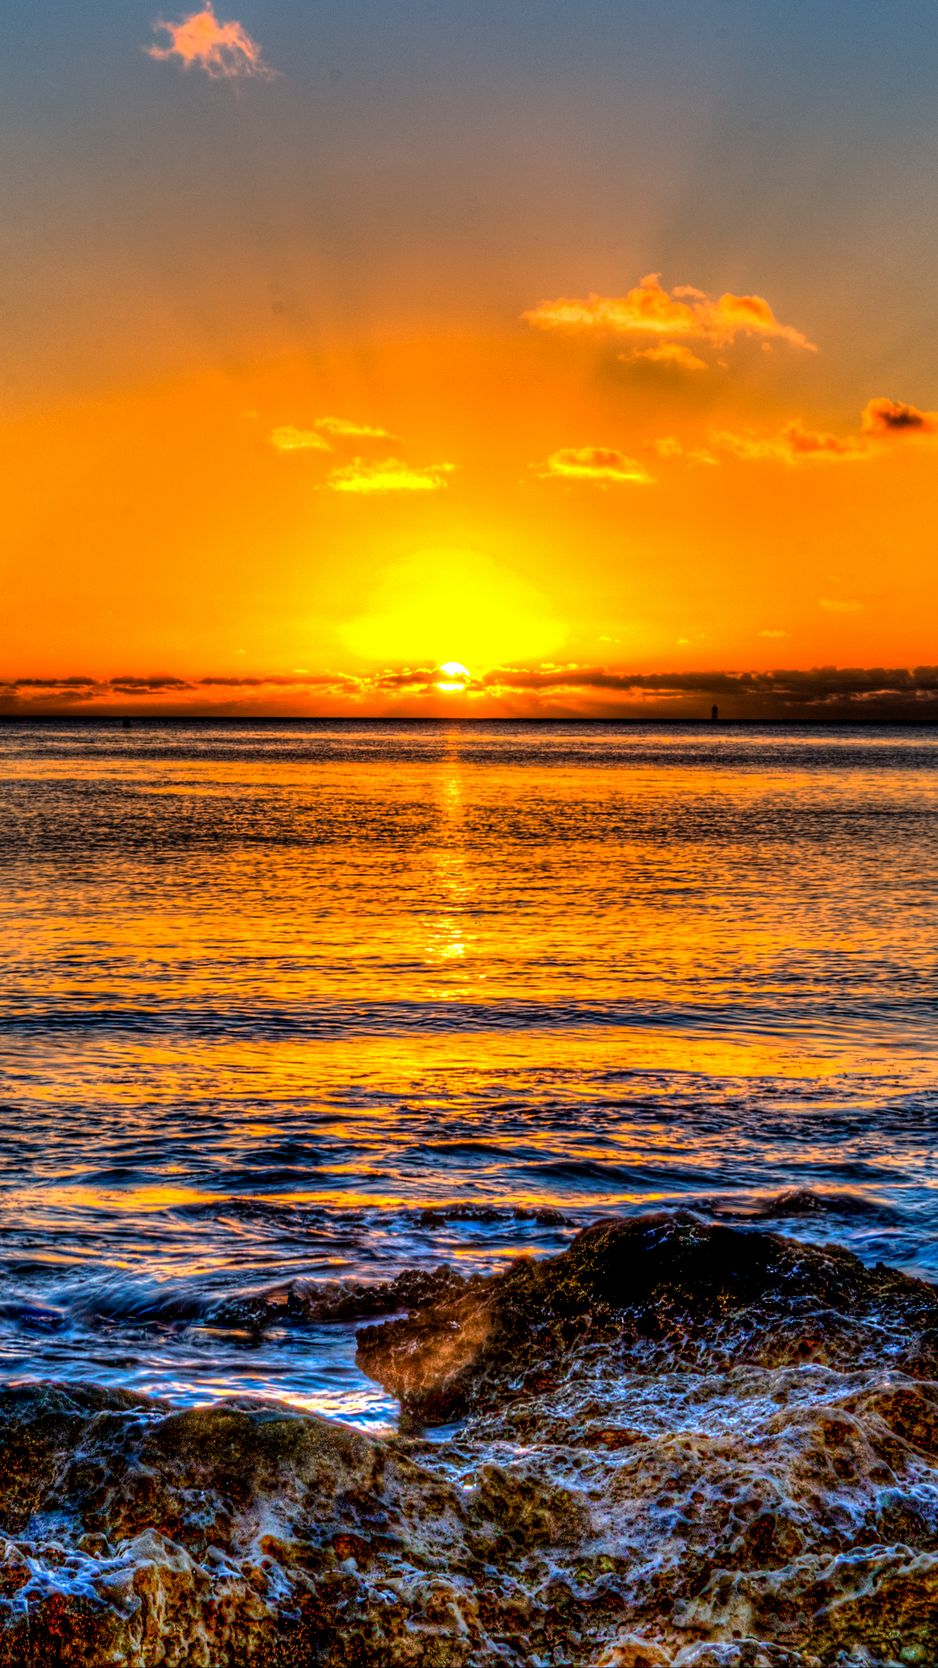 Bốn yếu tố quan trọng - hoàng hôn, chân trời, biển và sóng - đều được kết hợp trong hình nền ảnh này để tạo nên một không gian đầy cảm hứng và quyến rũ. Với ảnh chụp tại Hawaii, bạn sẽ được trải nghiệm một không gian vô cùng tuyệt vời và đồng nghĩa với việc tìm kiếm sự yên bình và hạnh phúc. Tải nền ảnh 938x1668 này để bắt đầu cuộc hành trình tuyệt vời vào thế giới thiên nhiên đầy mê hoặc.